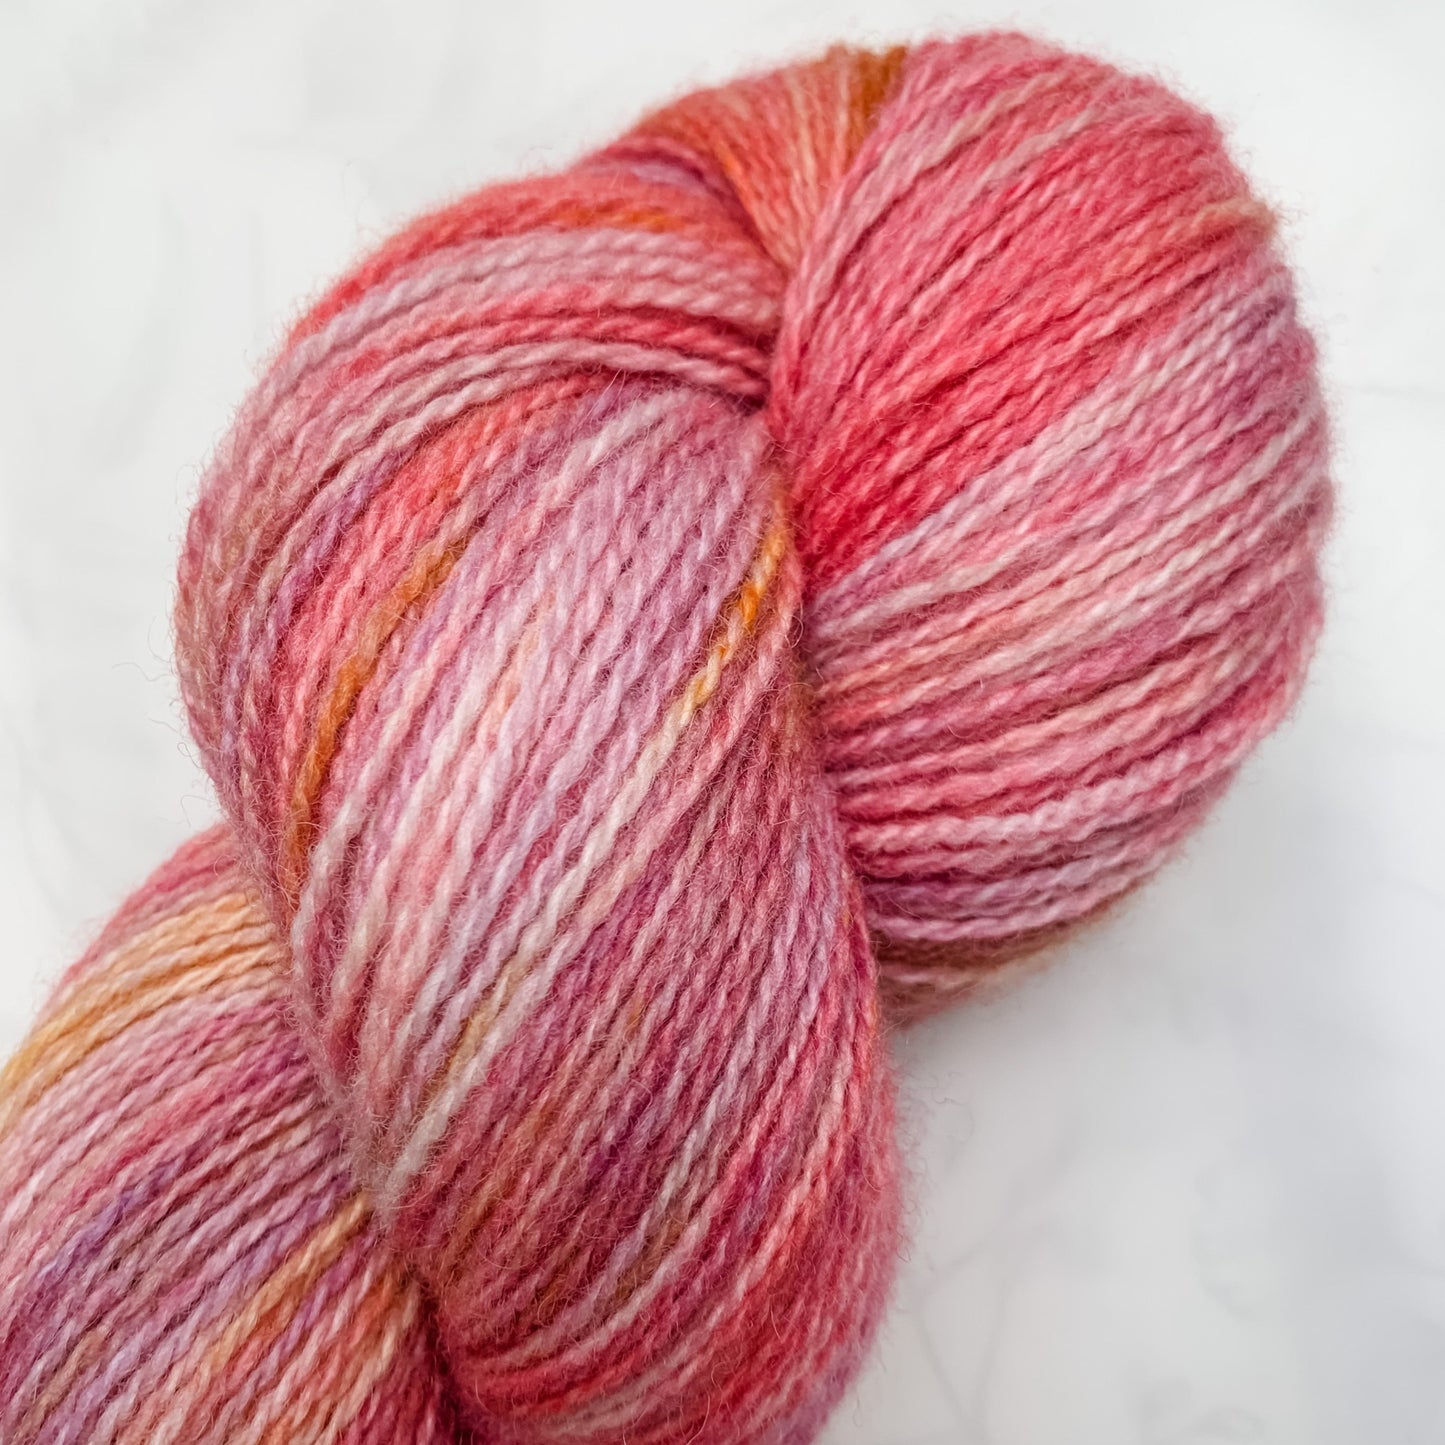 Blossom - Trollfjord sock - Variegated Yarn - Hand dyed yarn